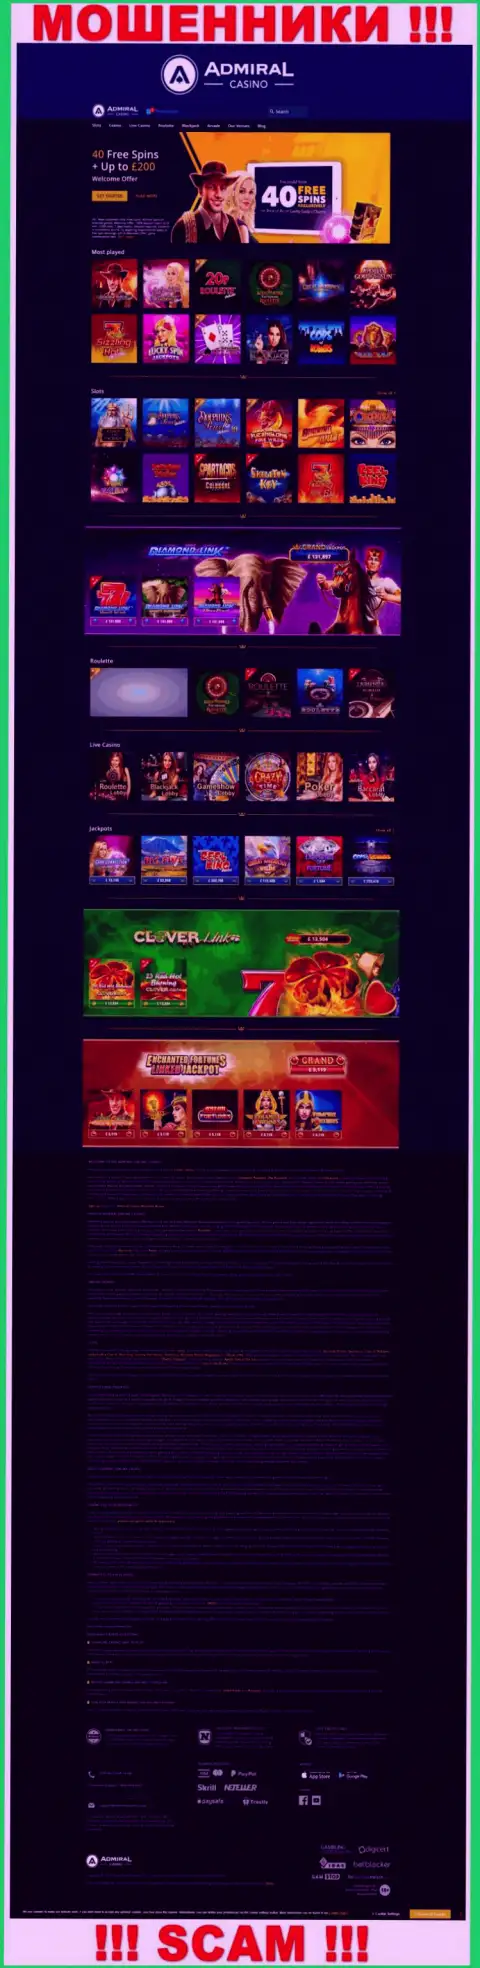 Капкан для наивных людей - официальный сайт мошенников Admiral Casino